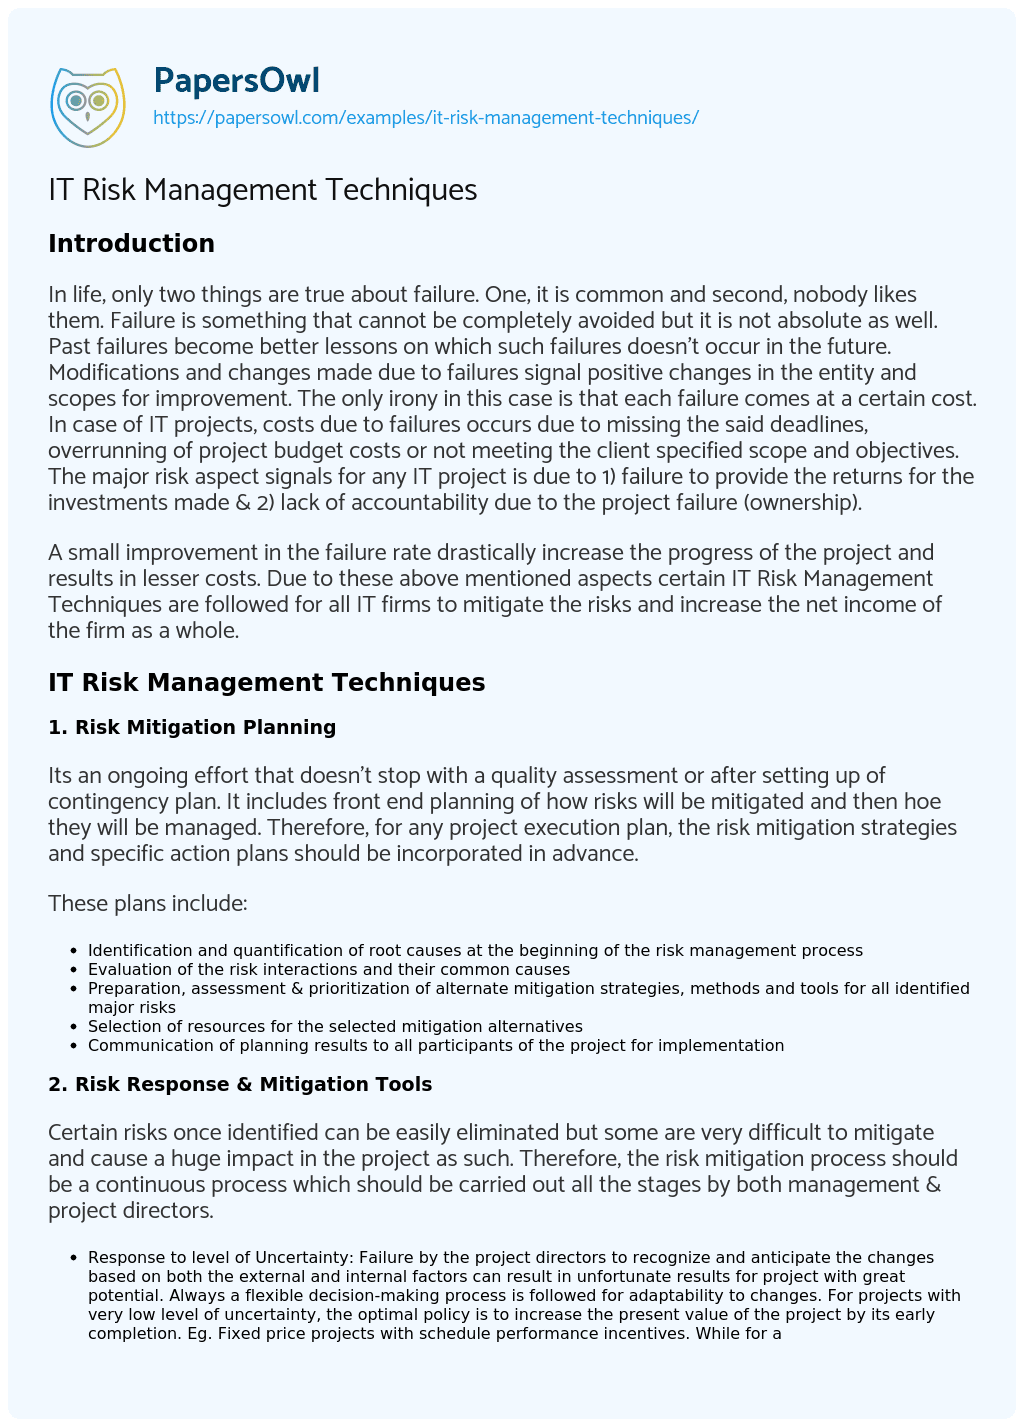 IT Risk Management Techniques essay